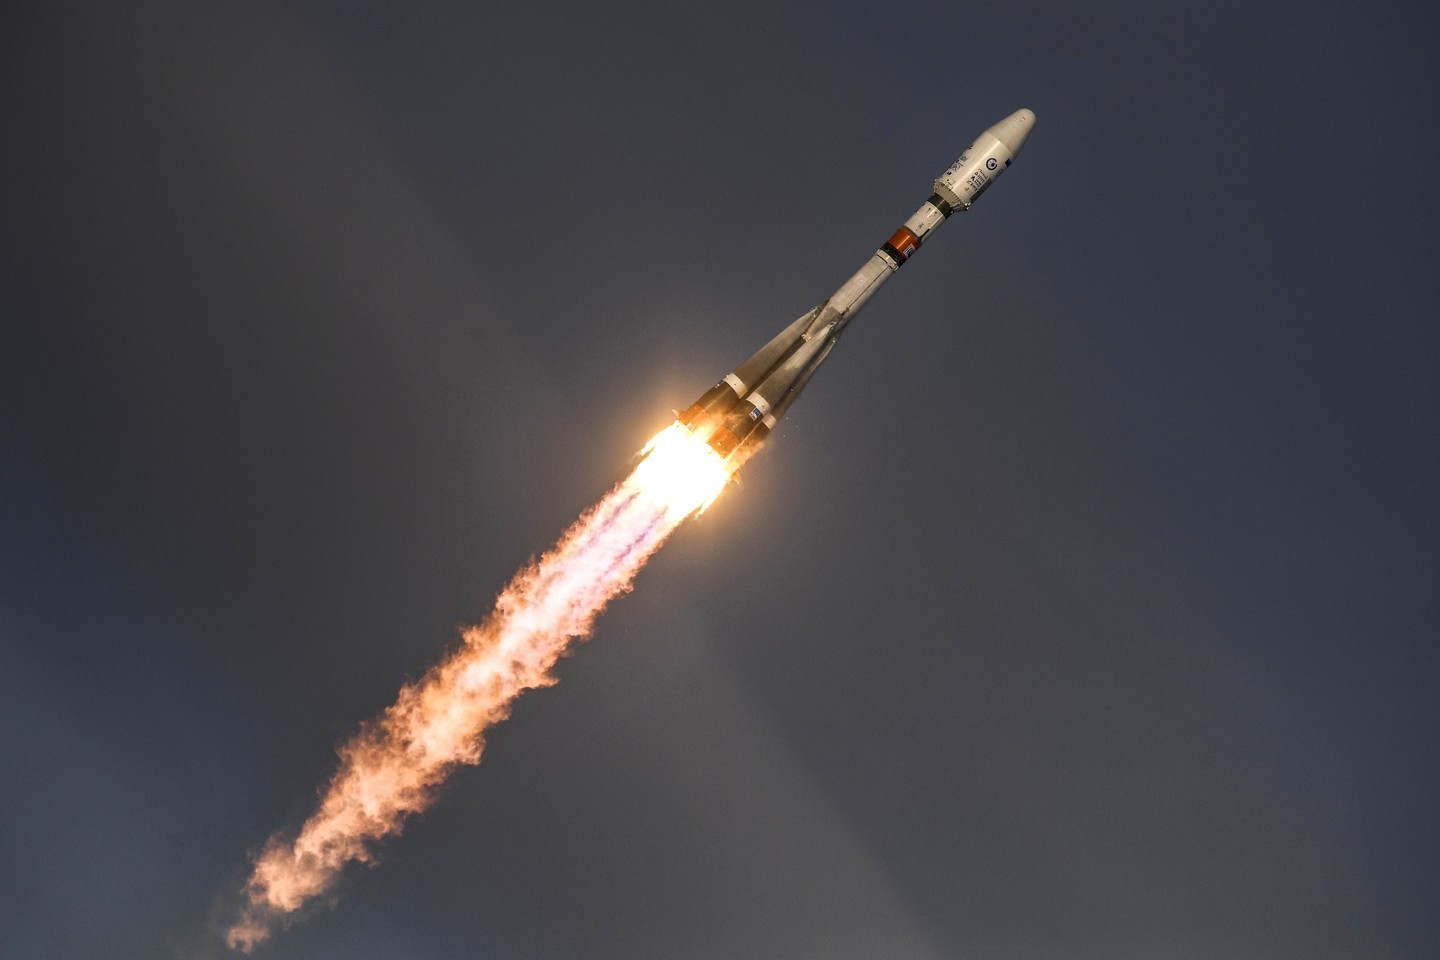 <p>Полёт ракеты-носителя "Союз-2.1б". Фото: &copy;РИА Новости/Рамиль Ситдиков</p>
<div>
<div></div>
</div>